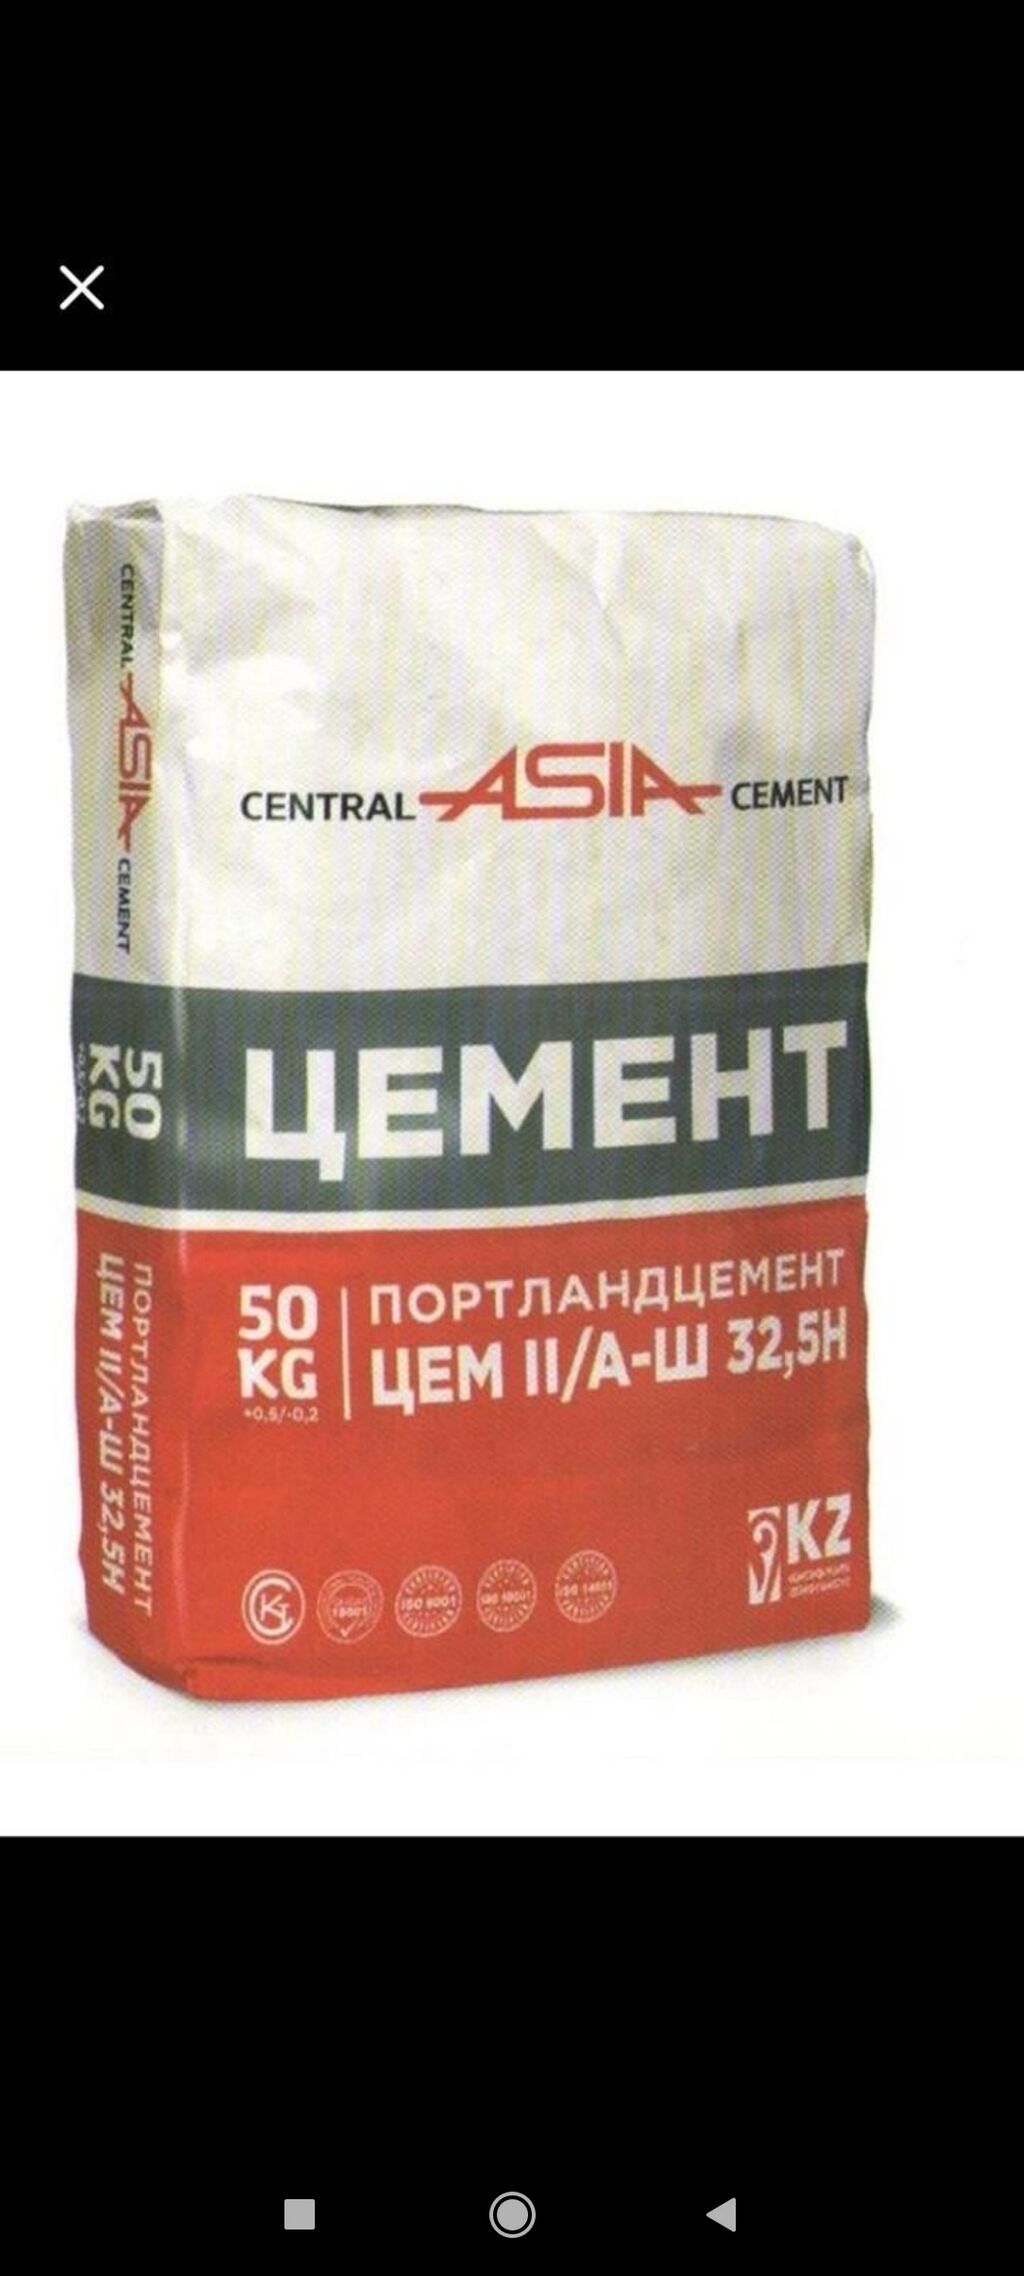 Торты облегчить цемент. Цемент. Цемент м400. Цемент казахстанский. Yasin цемент 400.